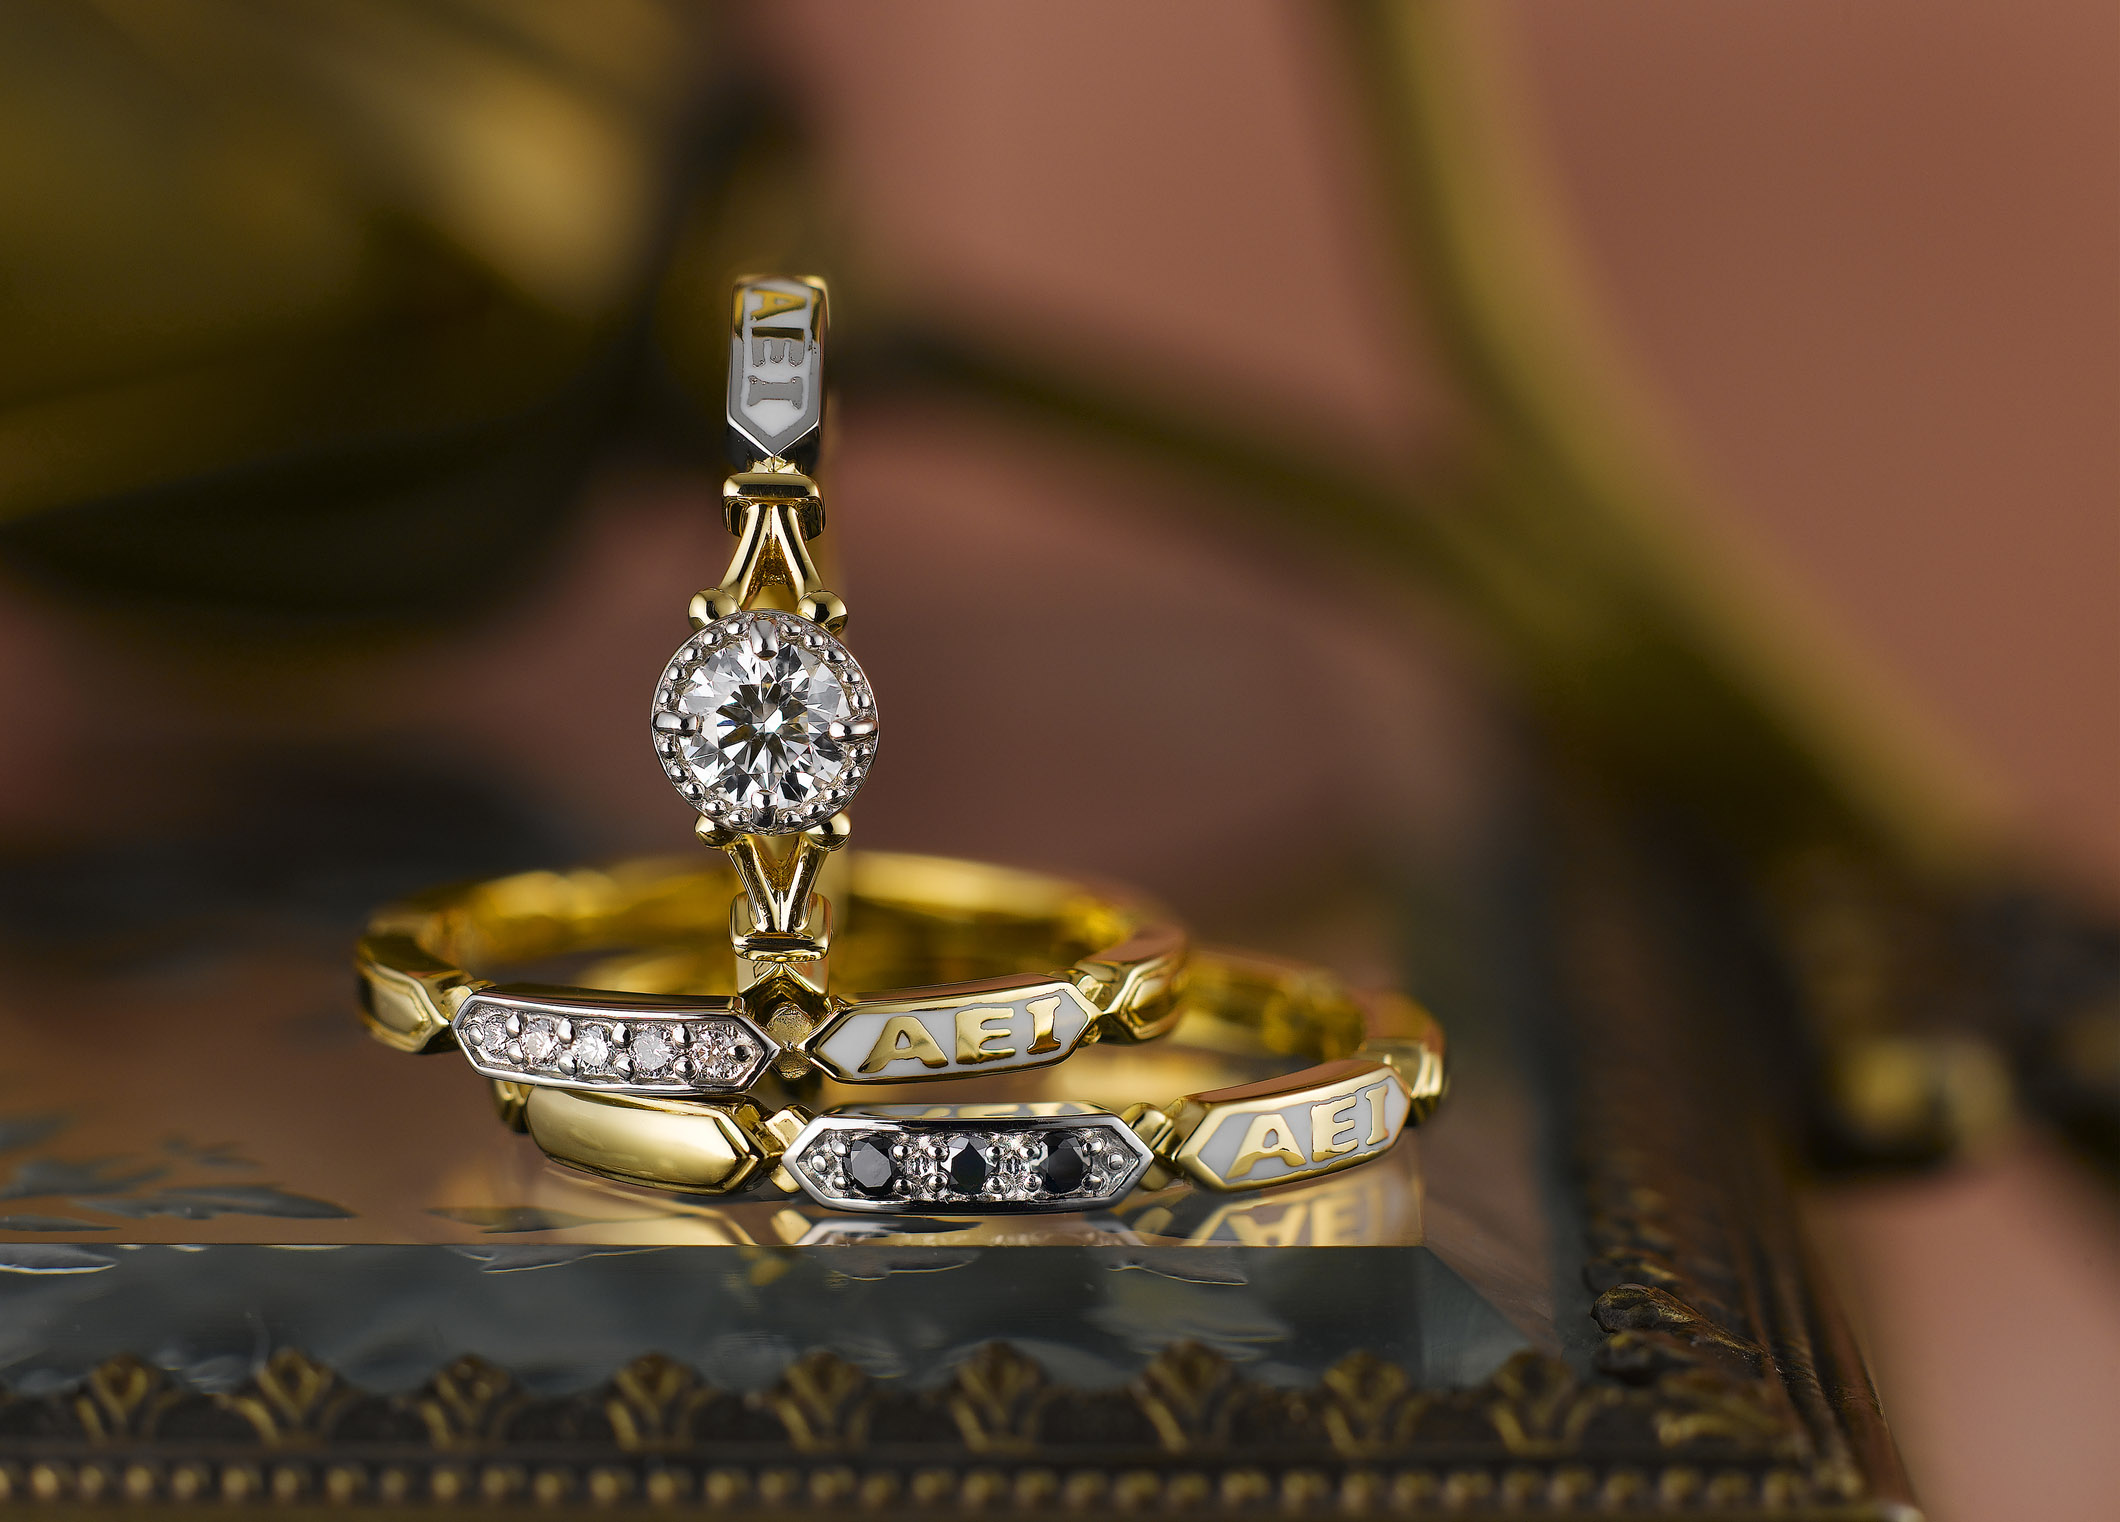 静岡市 おしゃれ女子に人気のアンティーク調ブライダルリング Jewelry Story ジュエリーストーリー ブライダル情報 婚約指輪 結婚指輪 結婚式場情報サイト